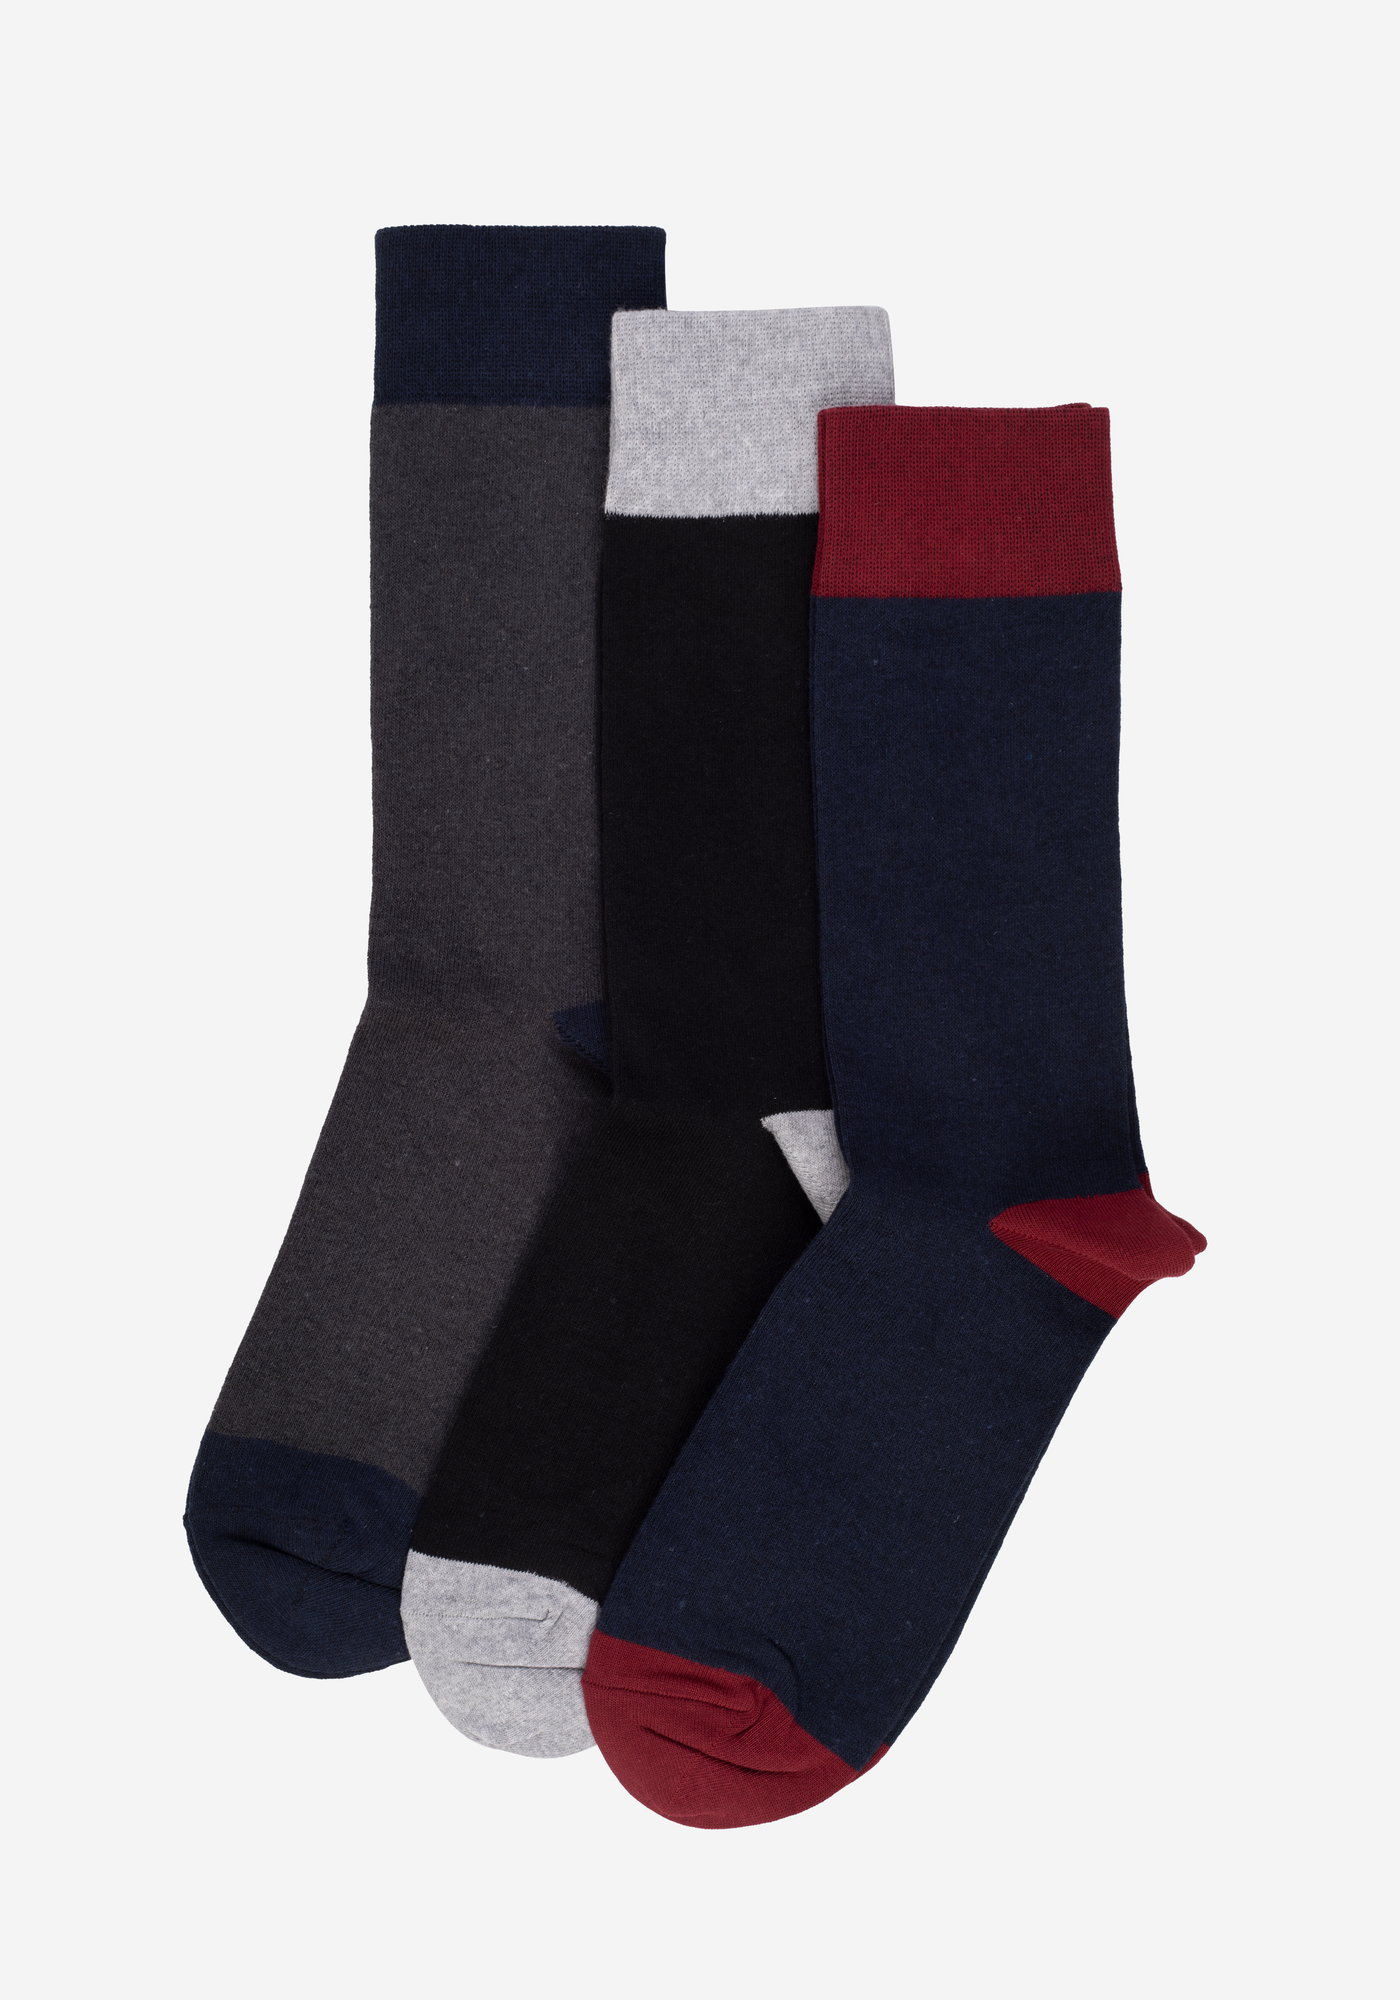 P3*1-702-3 / 3 Long Socks Pack